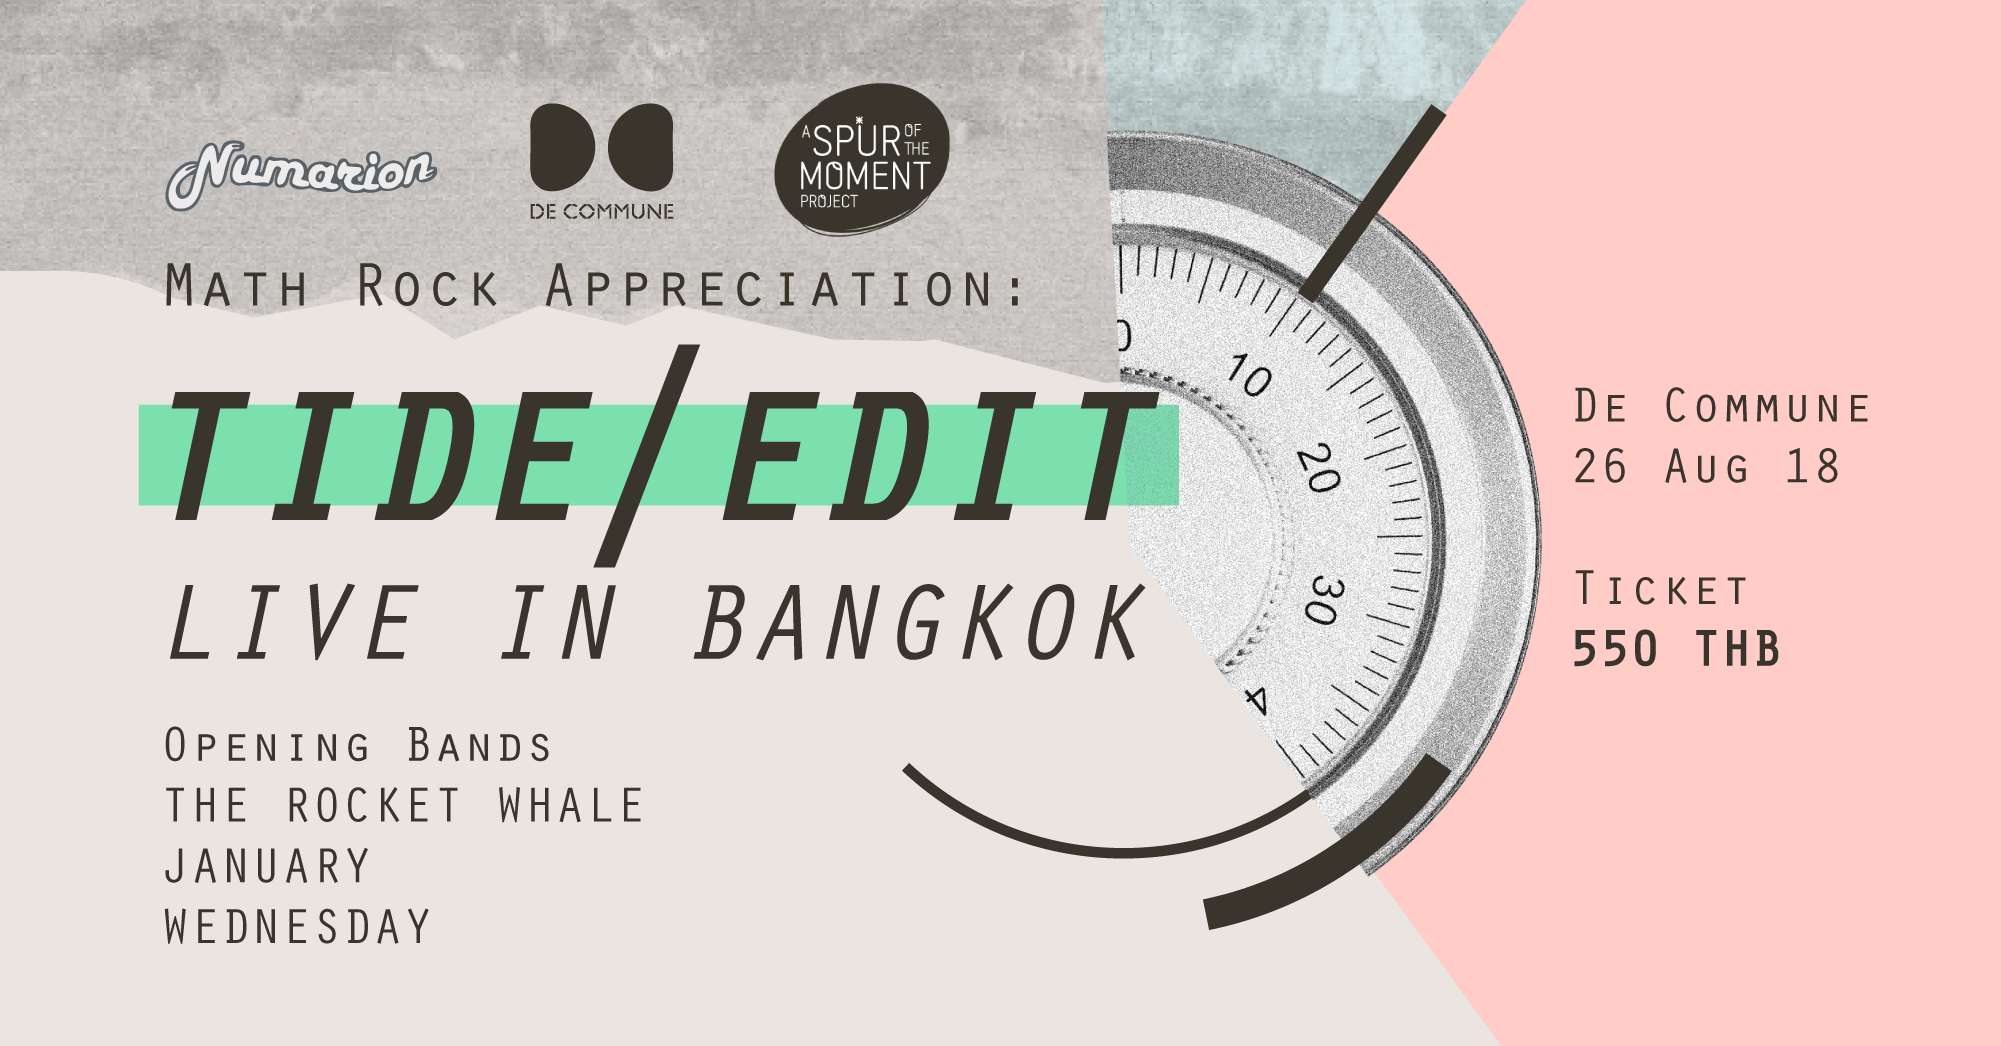 Numarion presents Math Rock Appreciation : Tide / Edit Live in Bangkok